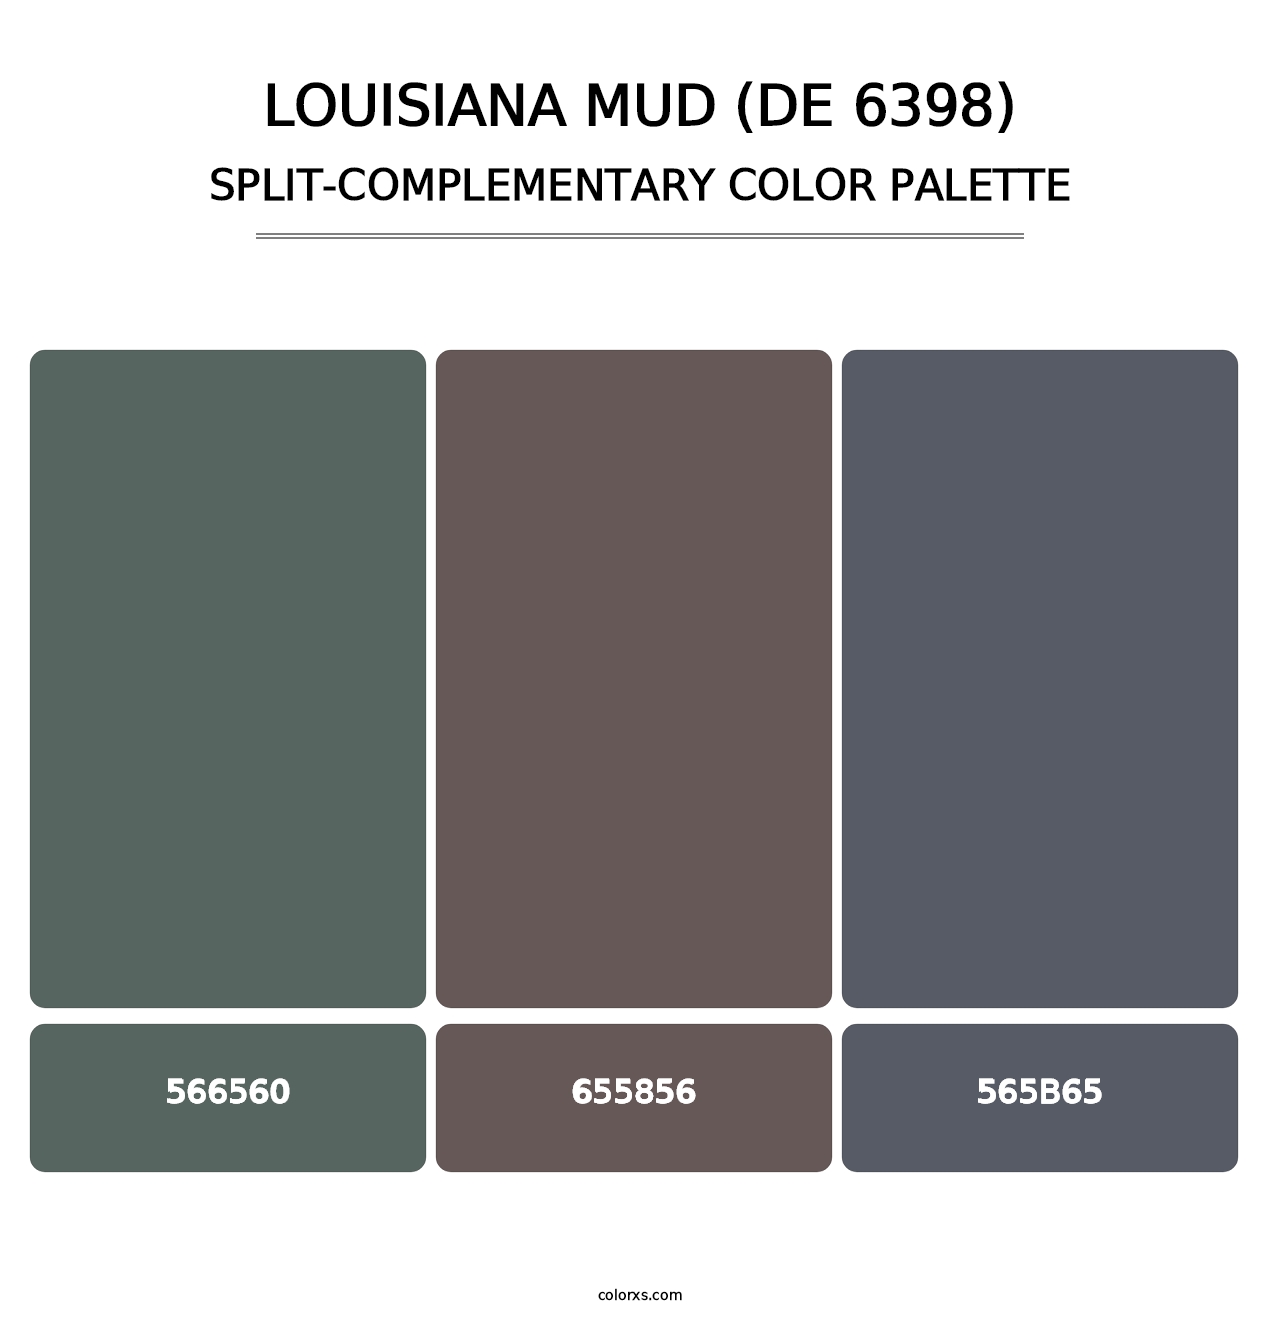 Louisiana Mud (DE 6398) - Split-Complementary Color Palette